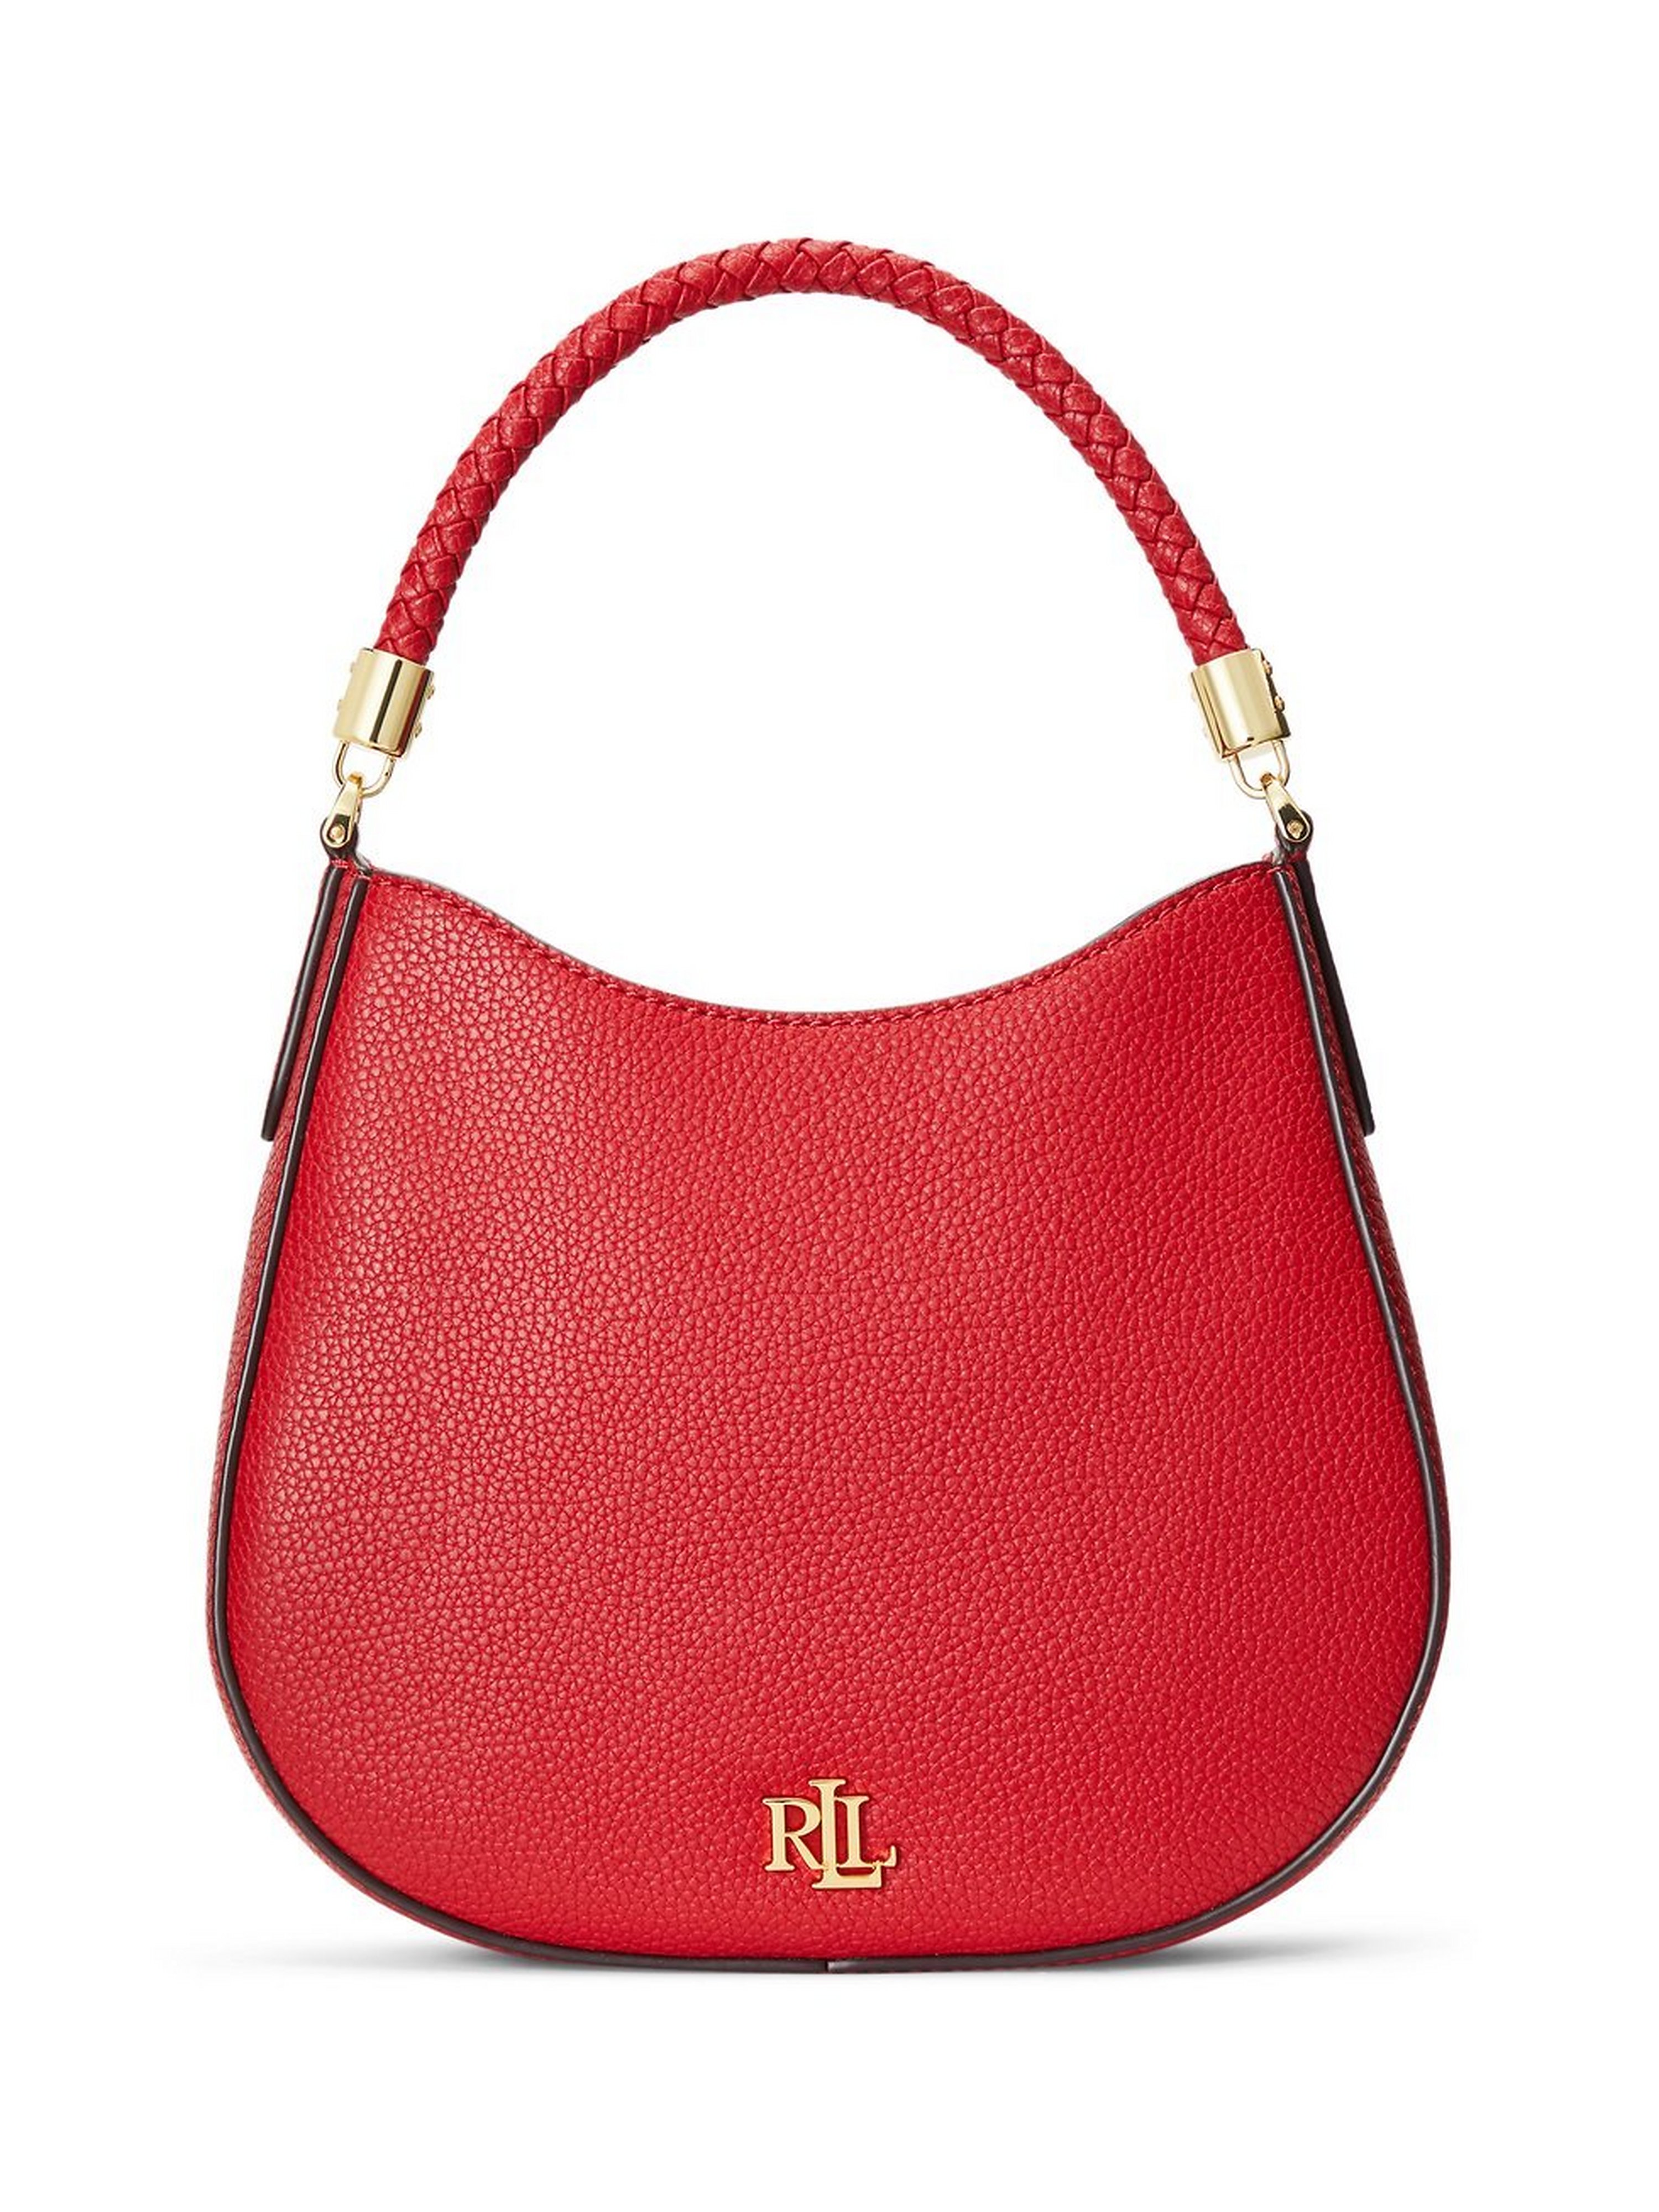 Handbag Lauren Ralph Lauren red